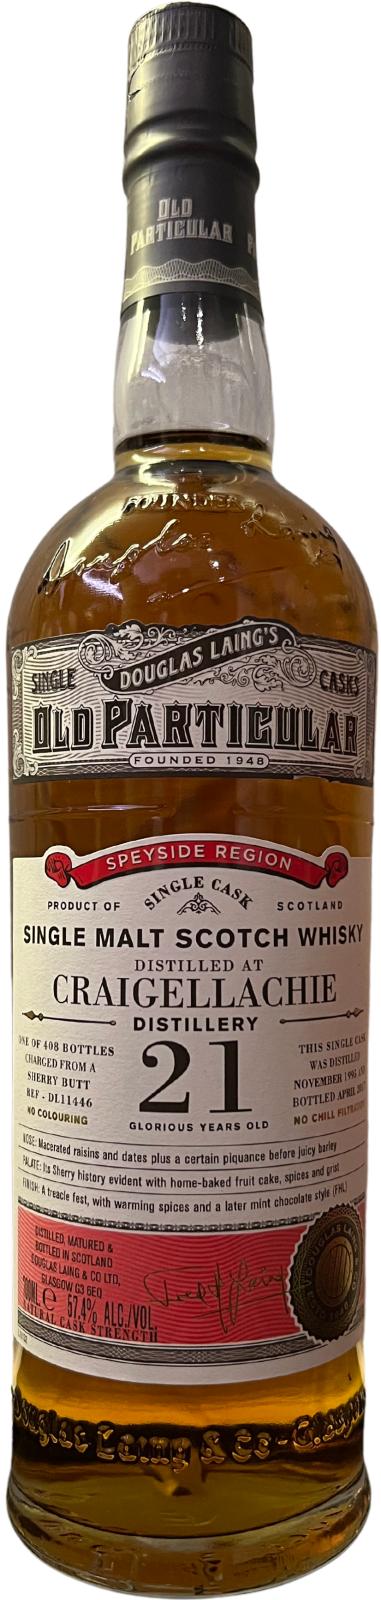 Craigellachie 1995 DL Old Particular Sherry Butt 57.4% 700ml